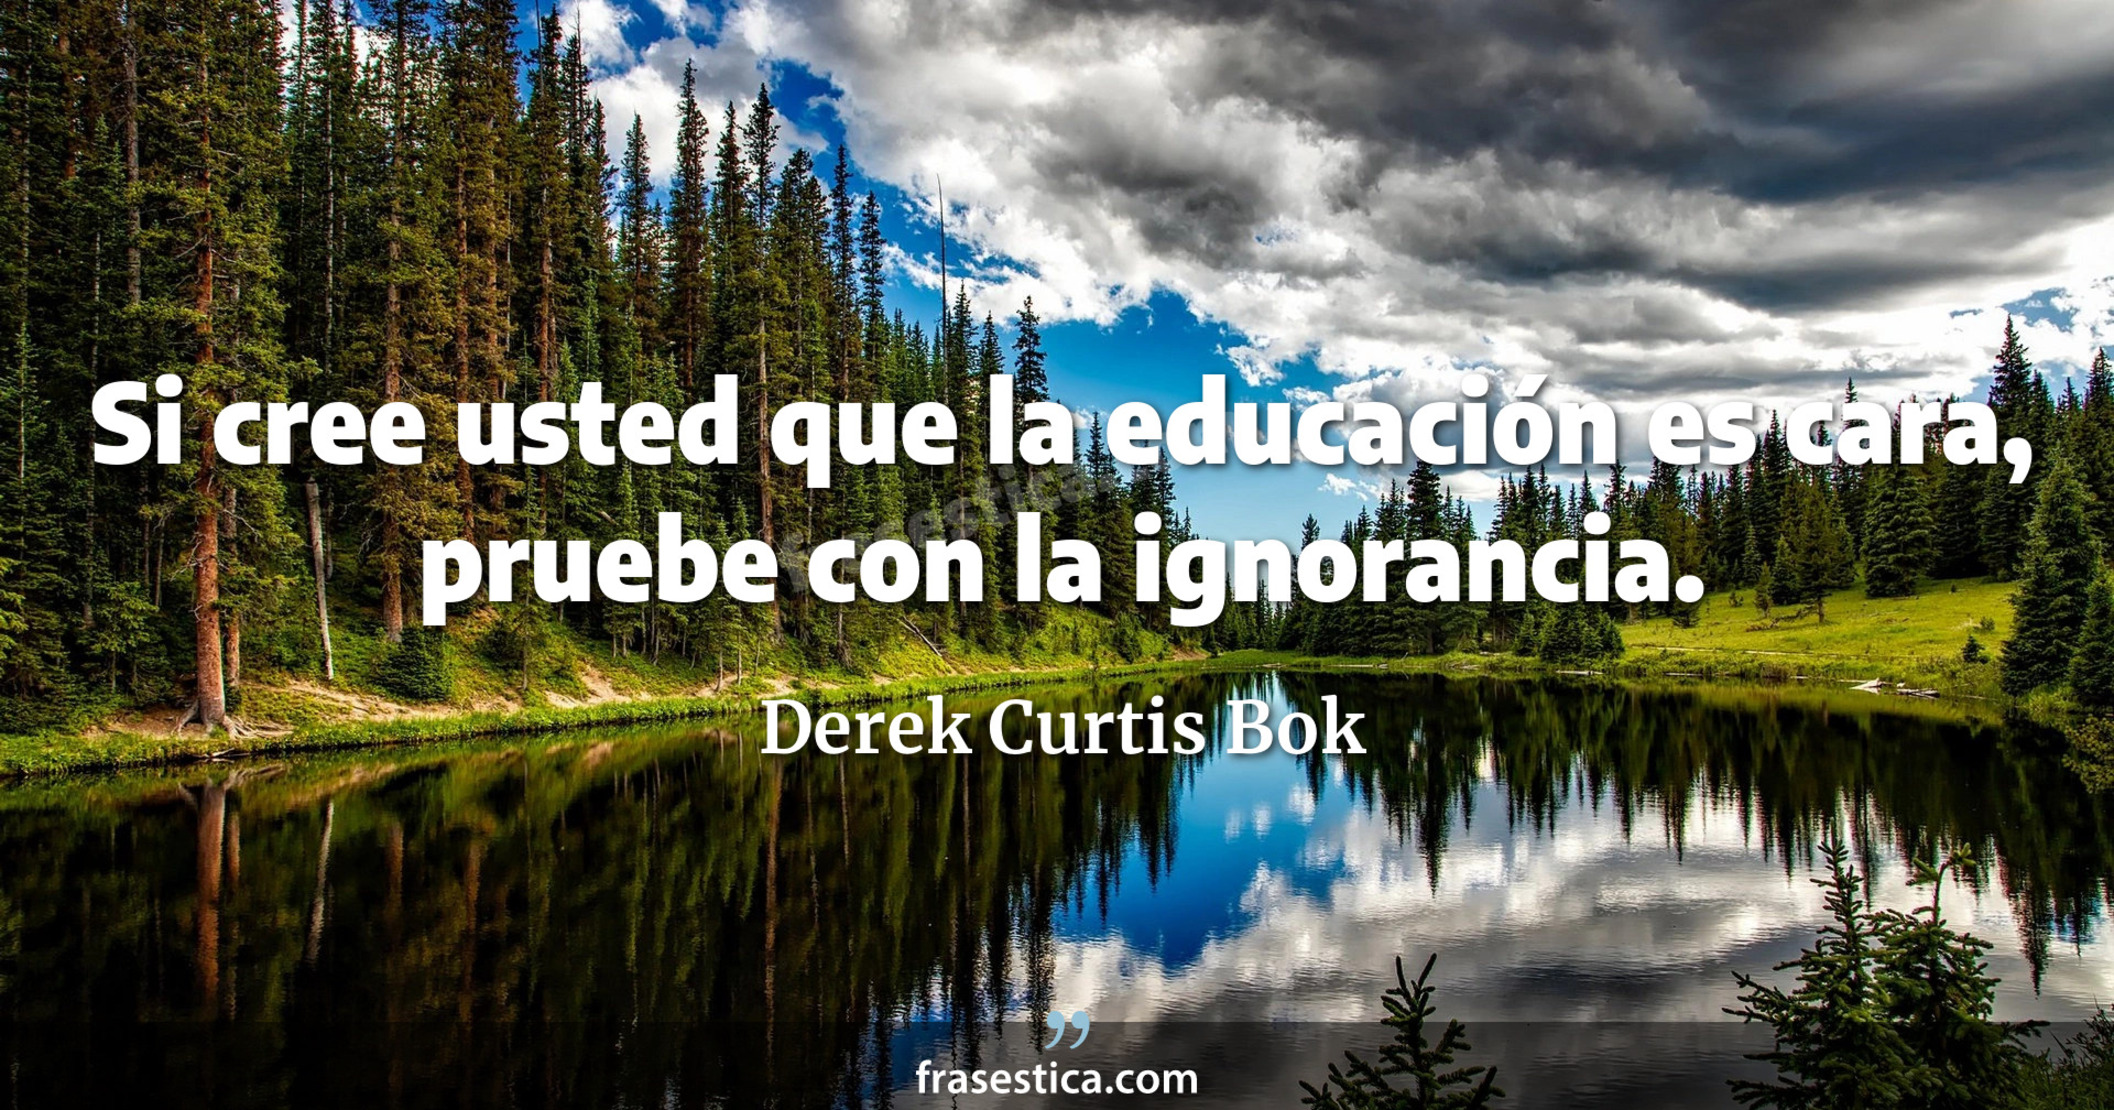 Si cree usted que la educación es cara, pruebe con la ignorancia. - Derek Curtis Bok